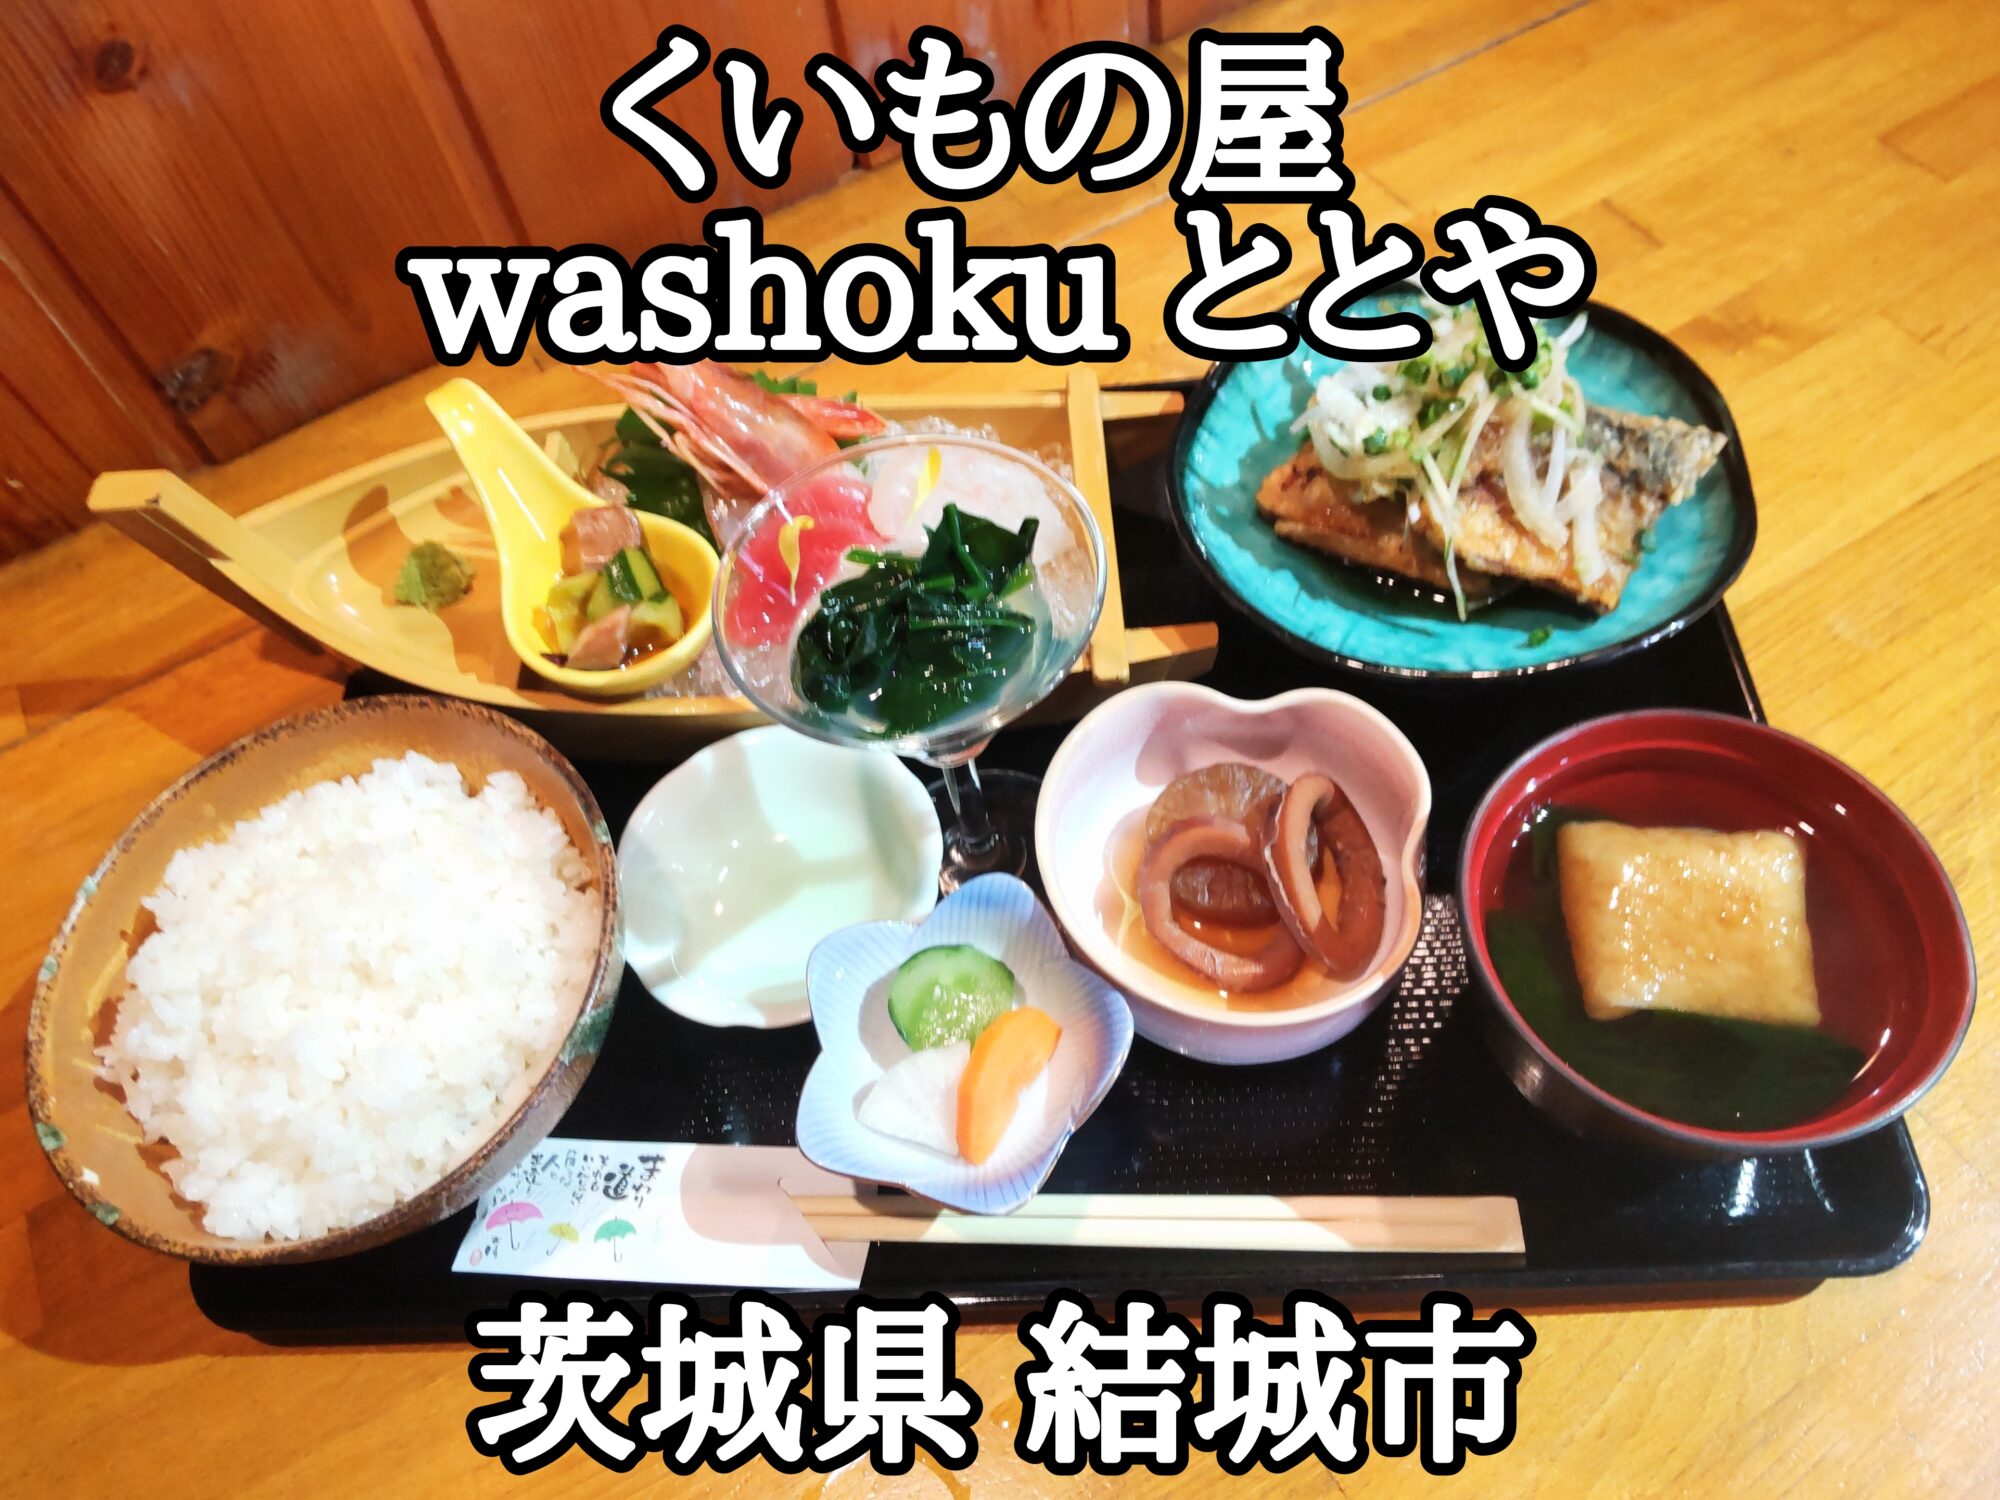 【茨城県】【結城市】「くいもの屋washoku ととや」ちょい刺しという名の刺し身舟盛りが付く日本料理屋さん